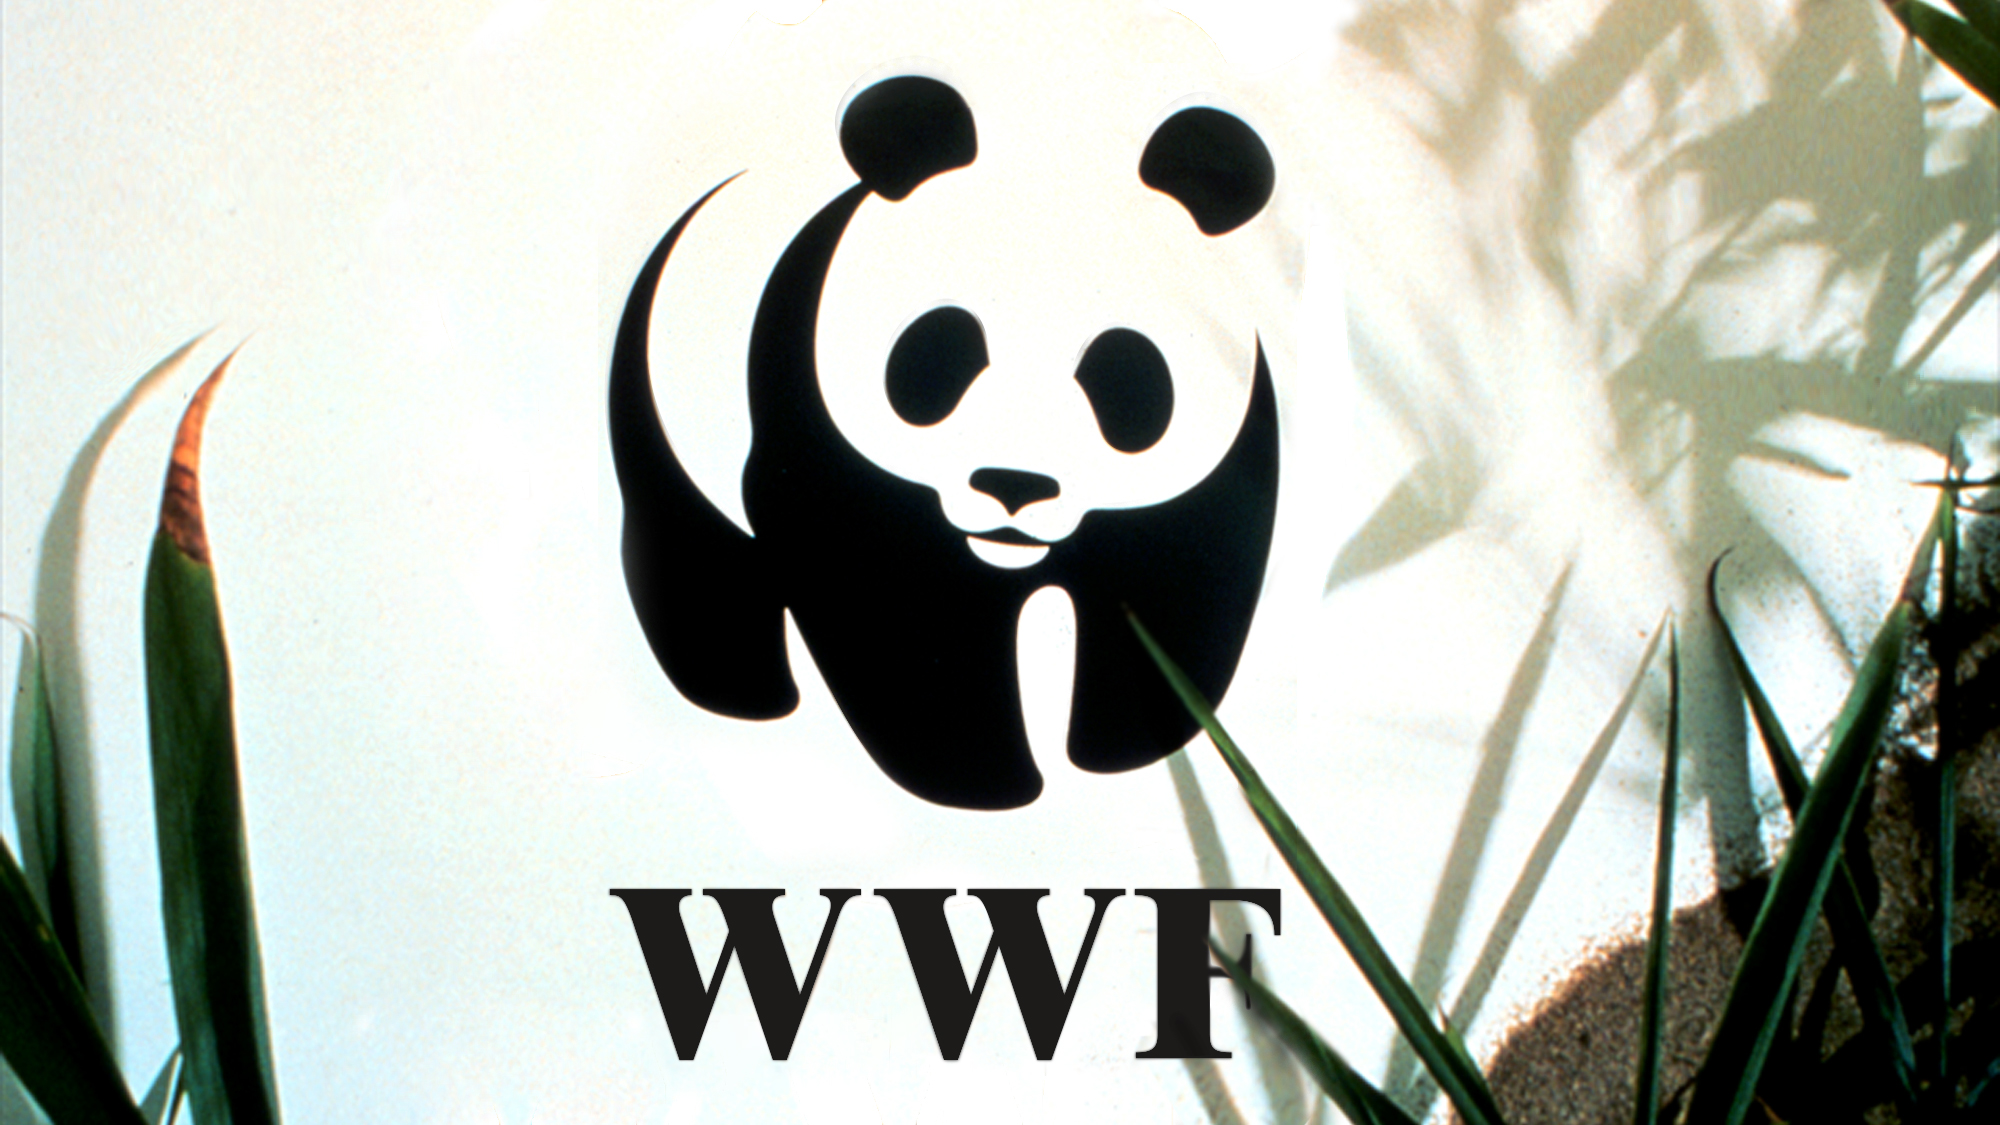 The world wildlife fund is. Всемирный фонд дикой природы WWF. Эмблема WWF Всемирного фонда дикой природы. Панда Всемирная организация. Фонд защиты дикой природы логотип.